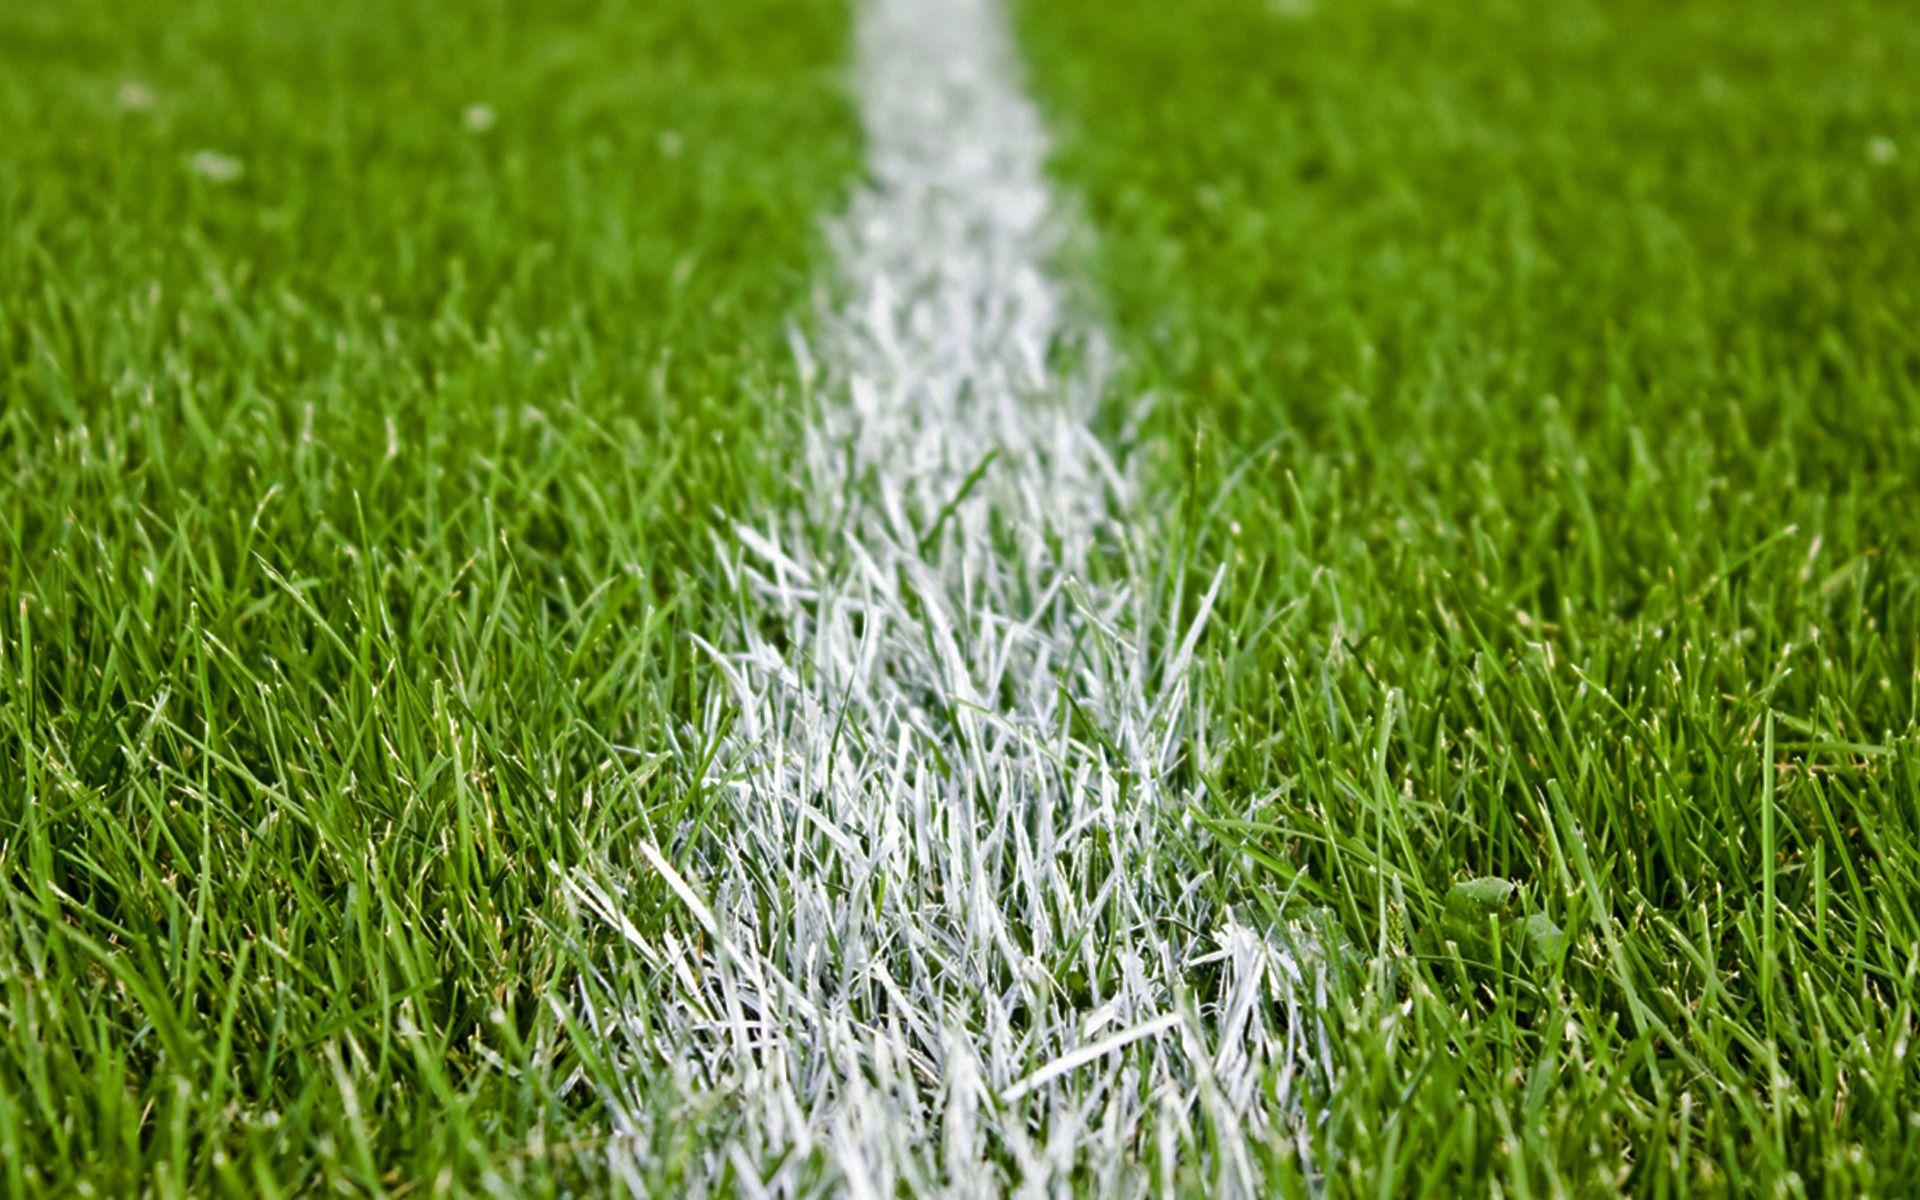 football field grass wallpaper